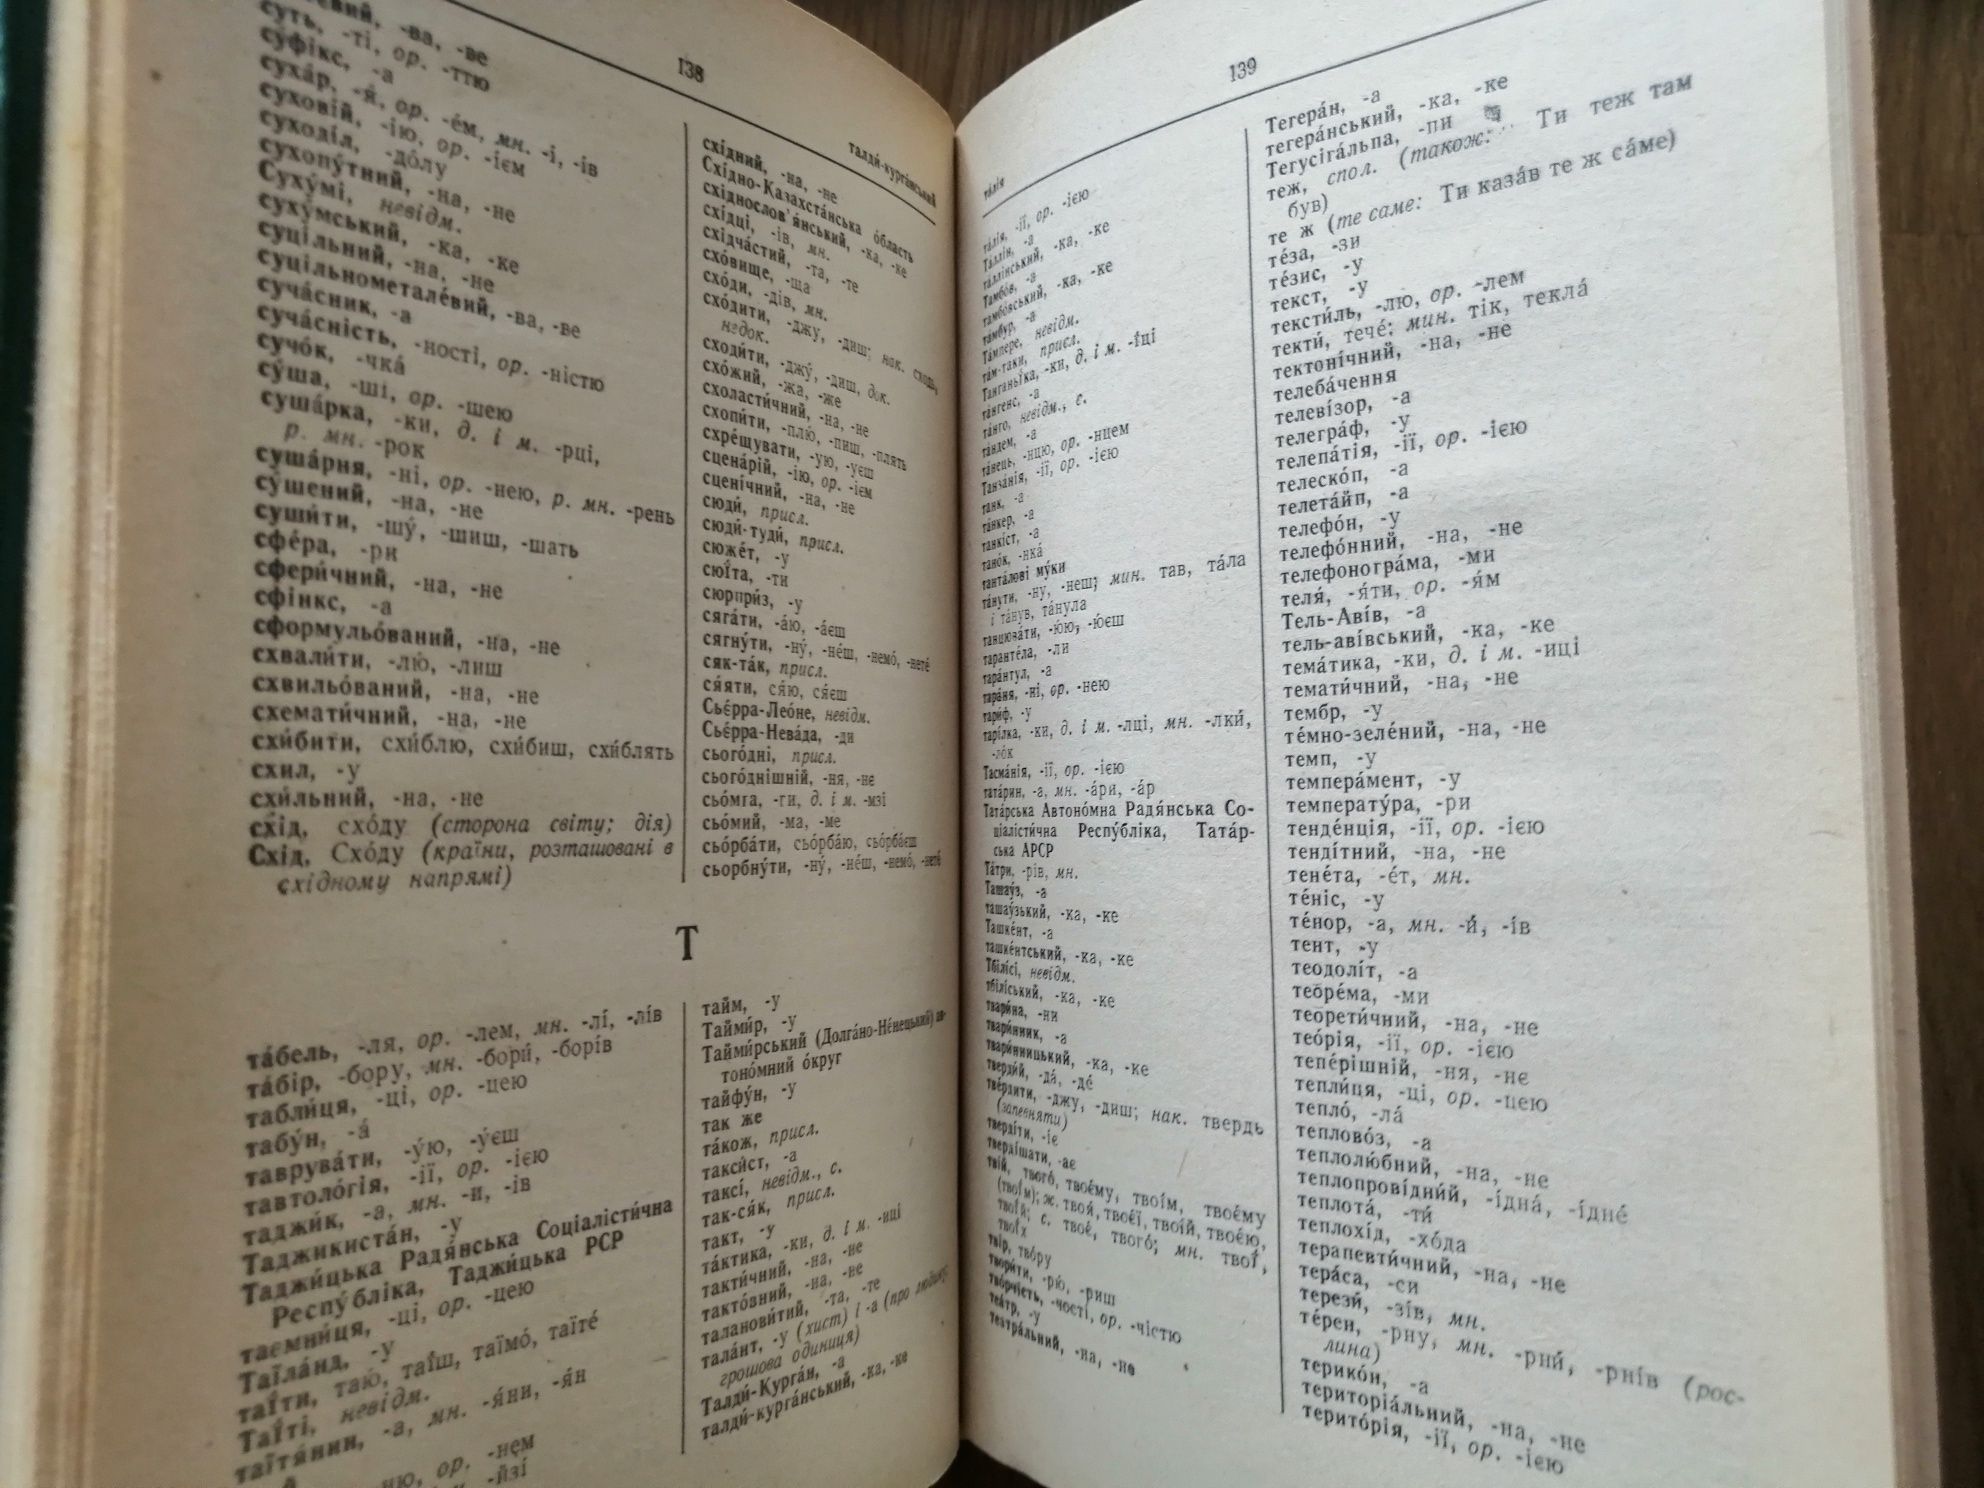 Орфографічний словник 1980 рік